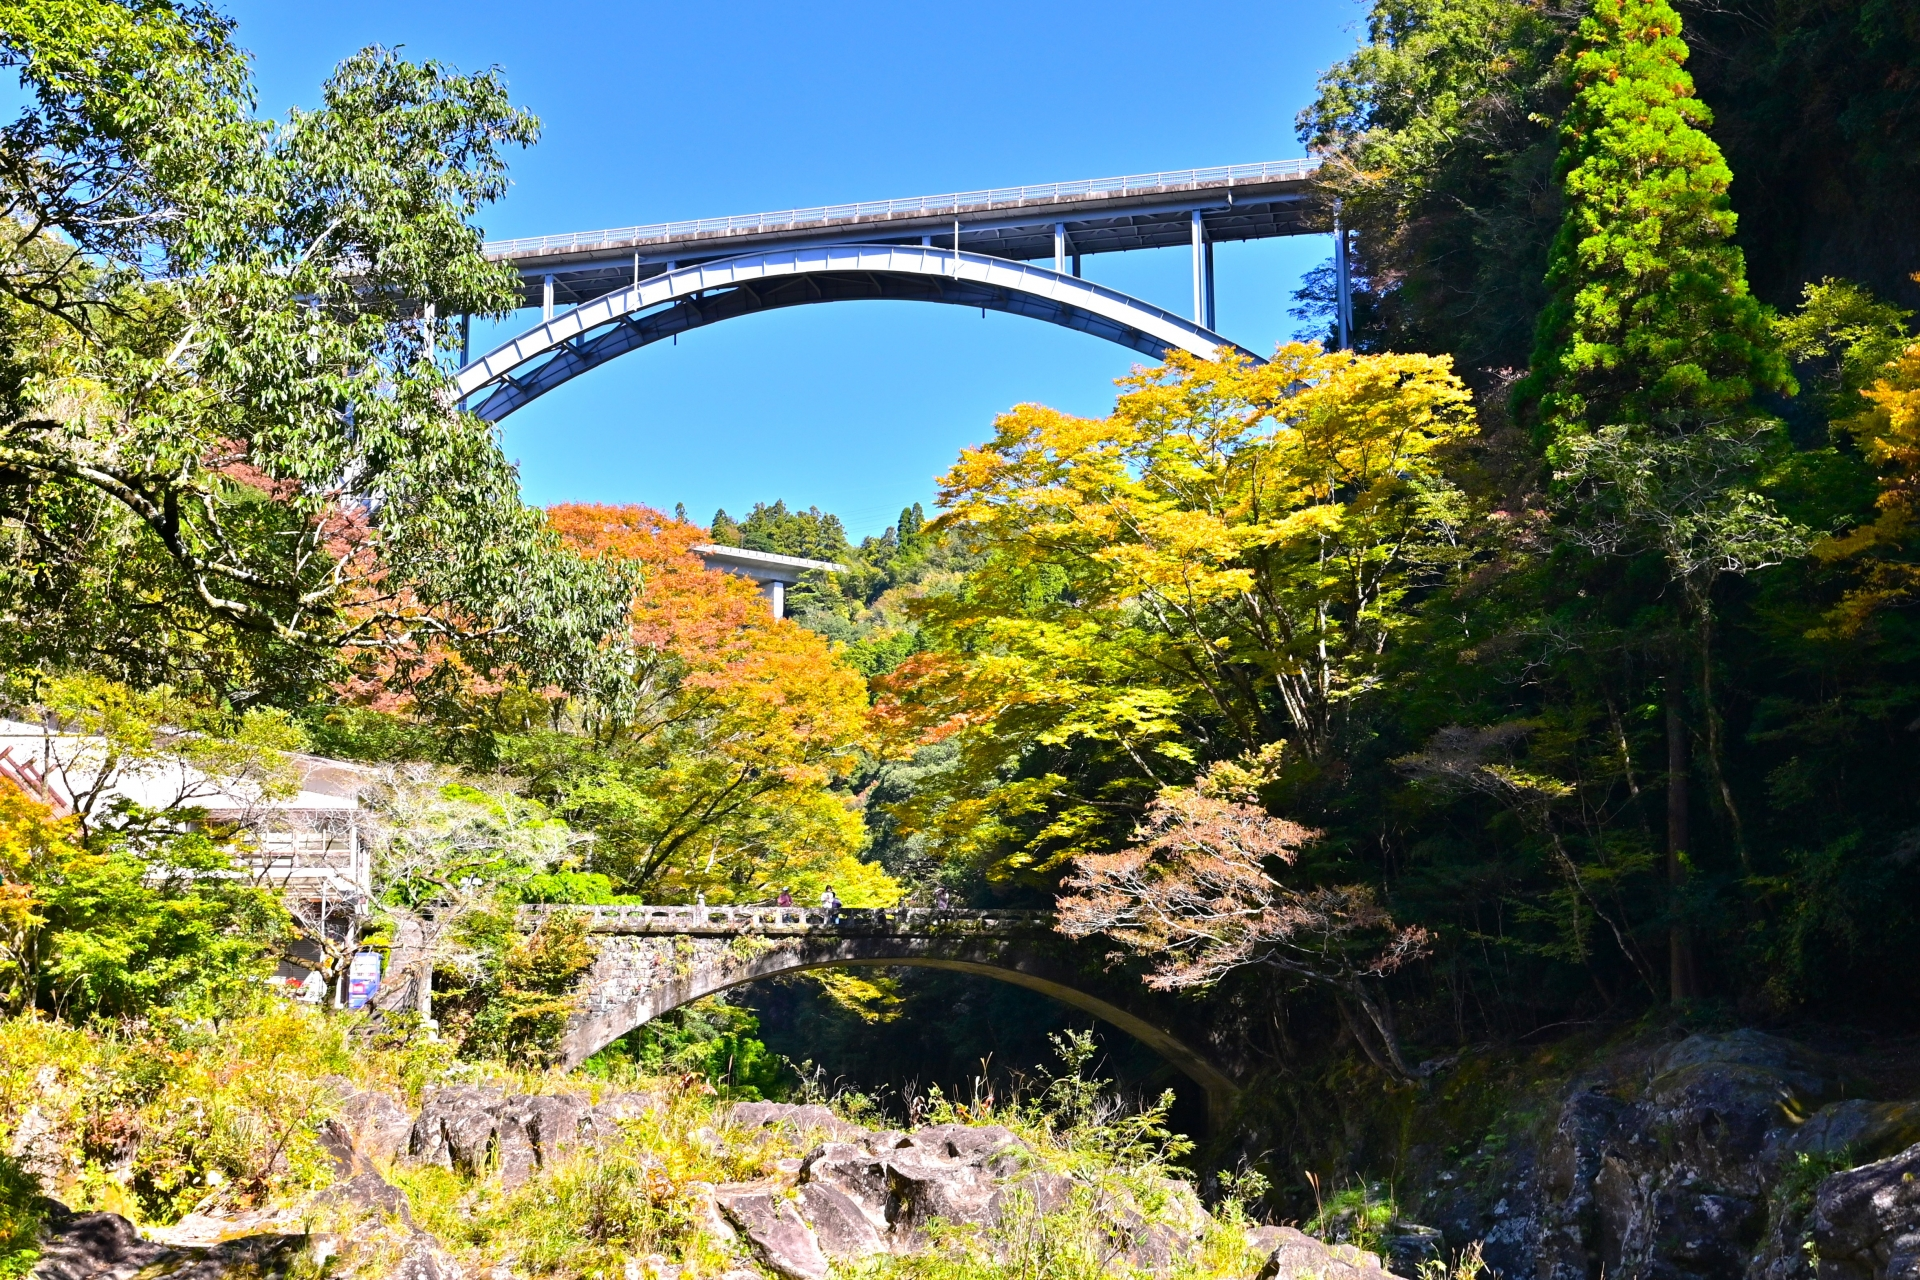 東洋一の高さを誇った鉄橋で、眼下に広がる渓谷の絶景を楽しむことができます